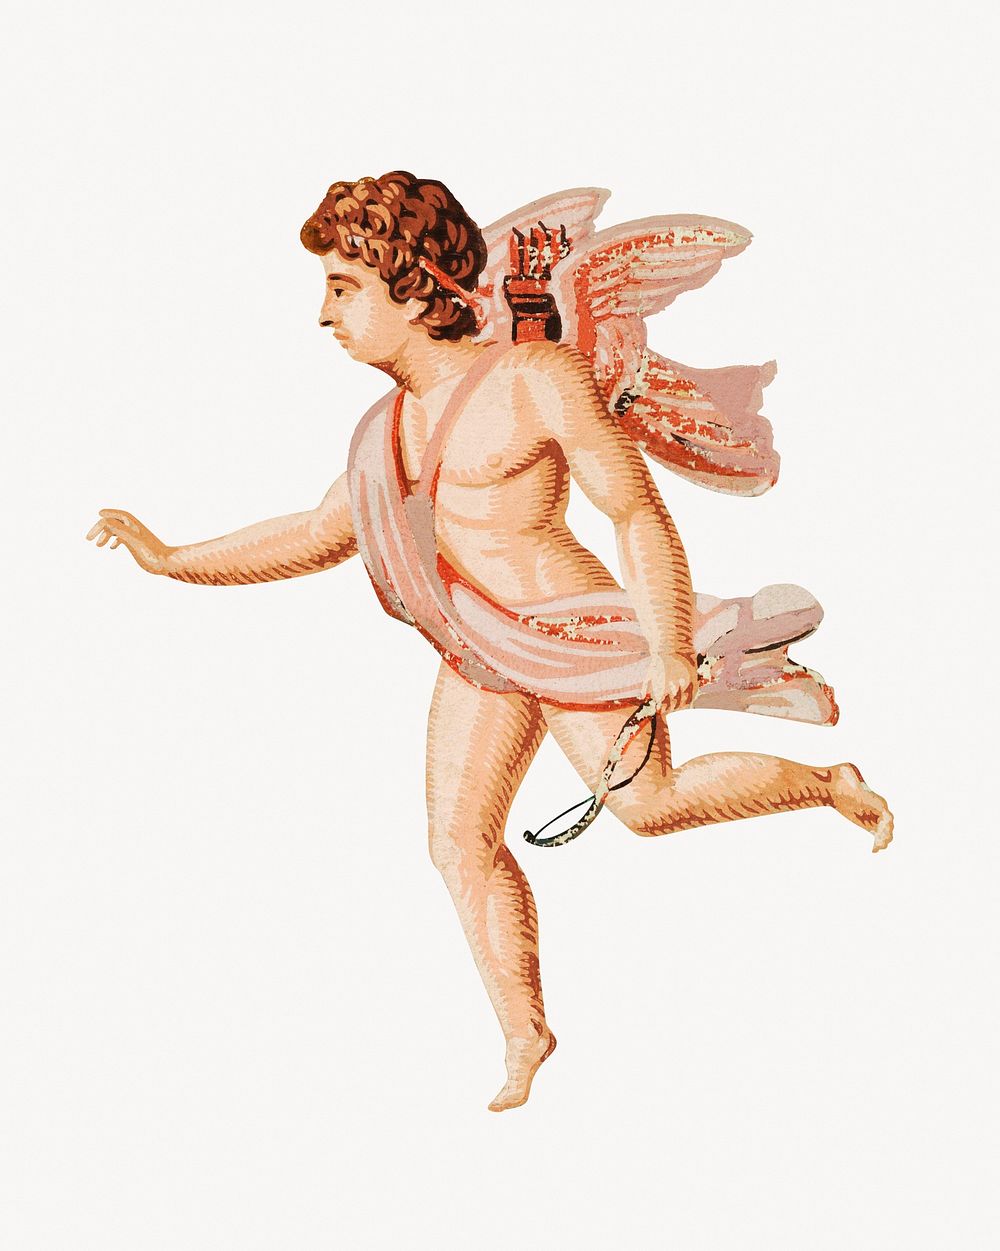 Vintage cupid, Valentine's illustration